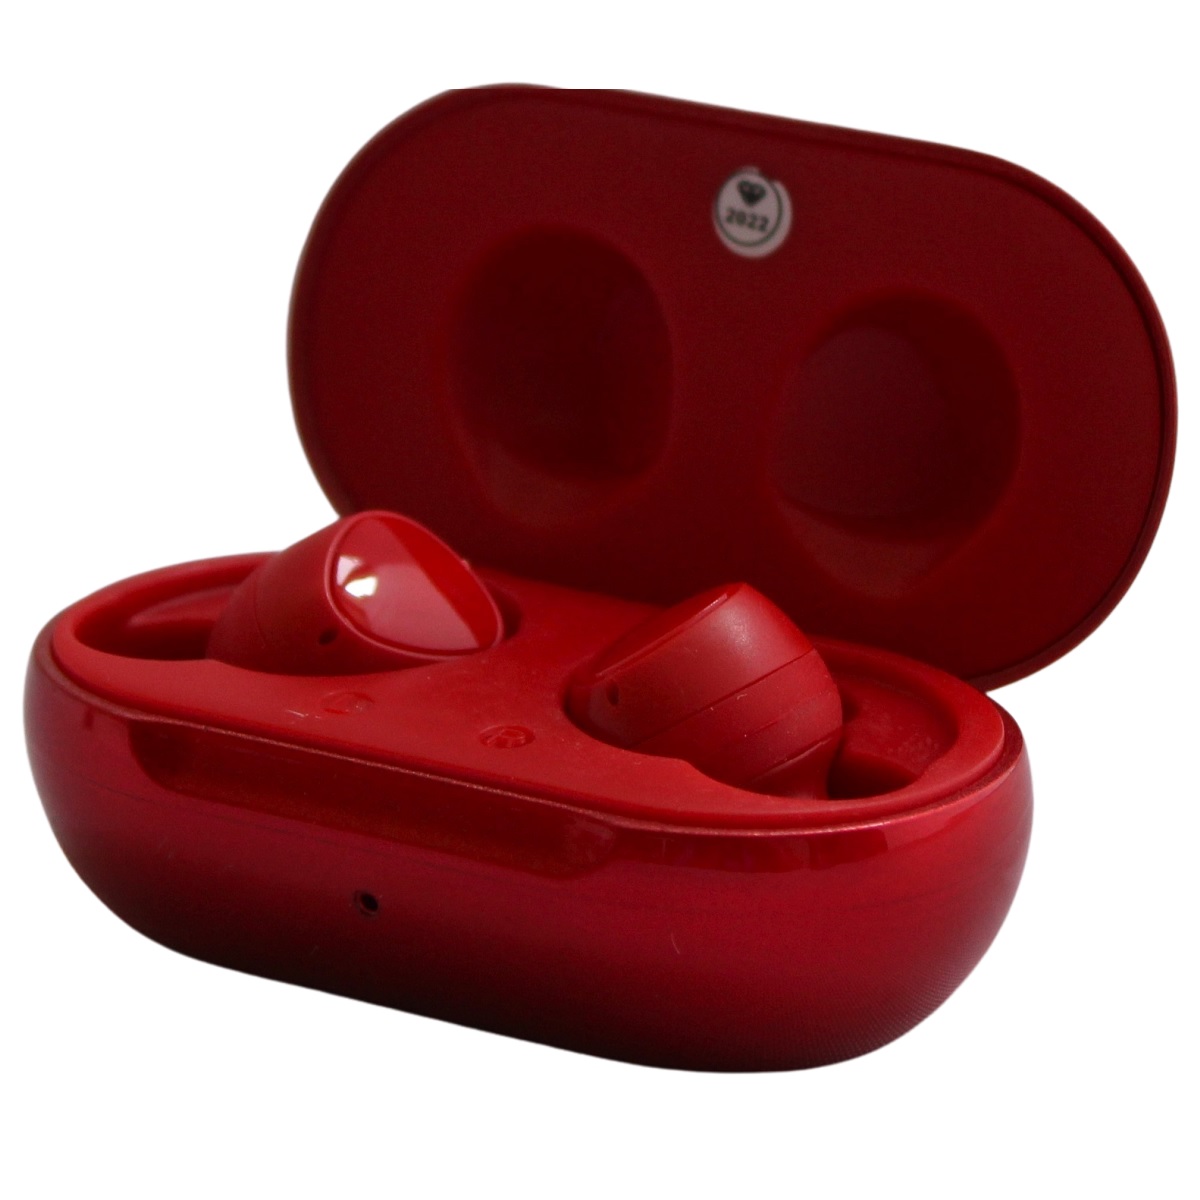 Auriculares Inalambricos Rojos: Sonido Impecable, Comodidad Total